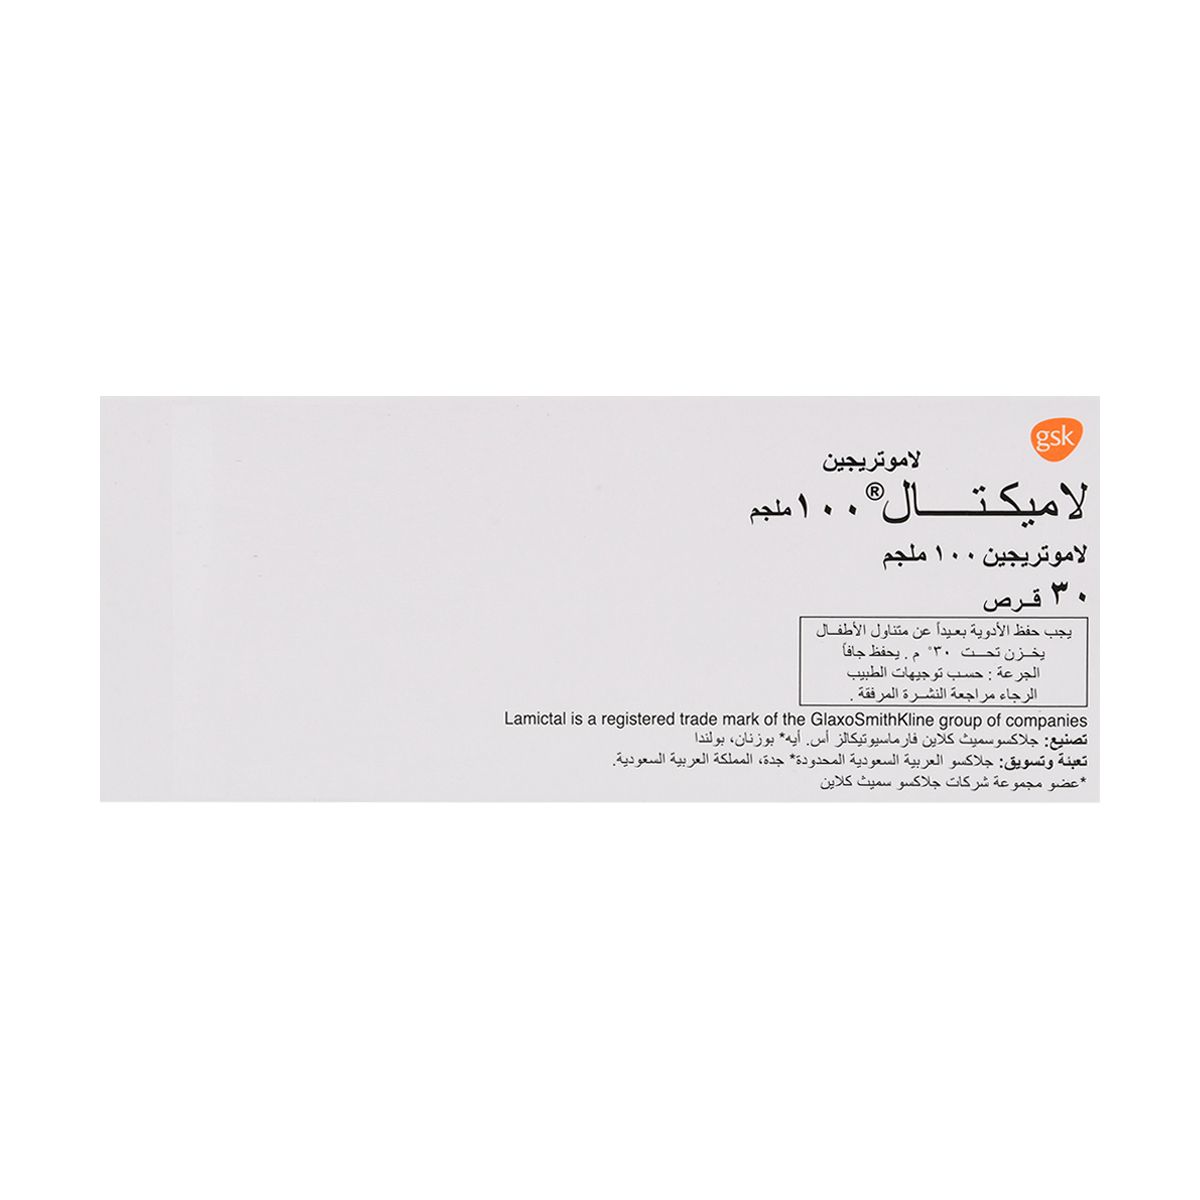 NATRILIX Natrilix 1.5 mg SR 30 Tab